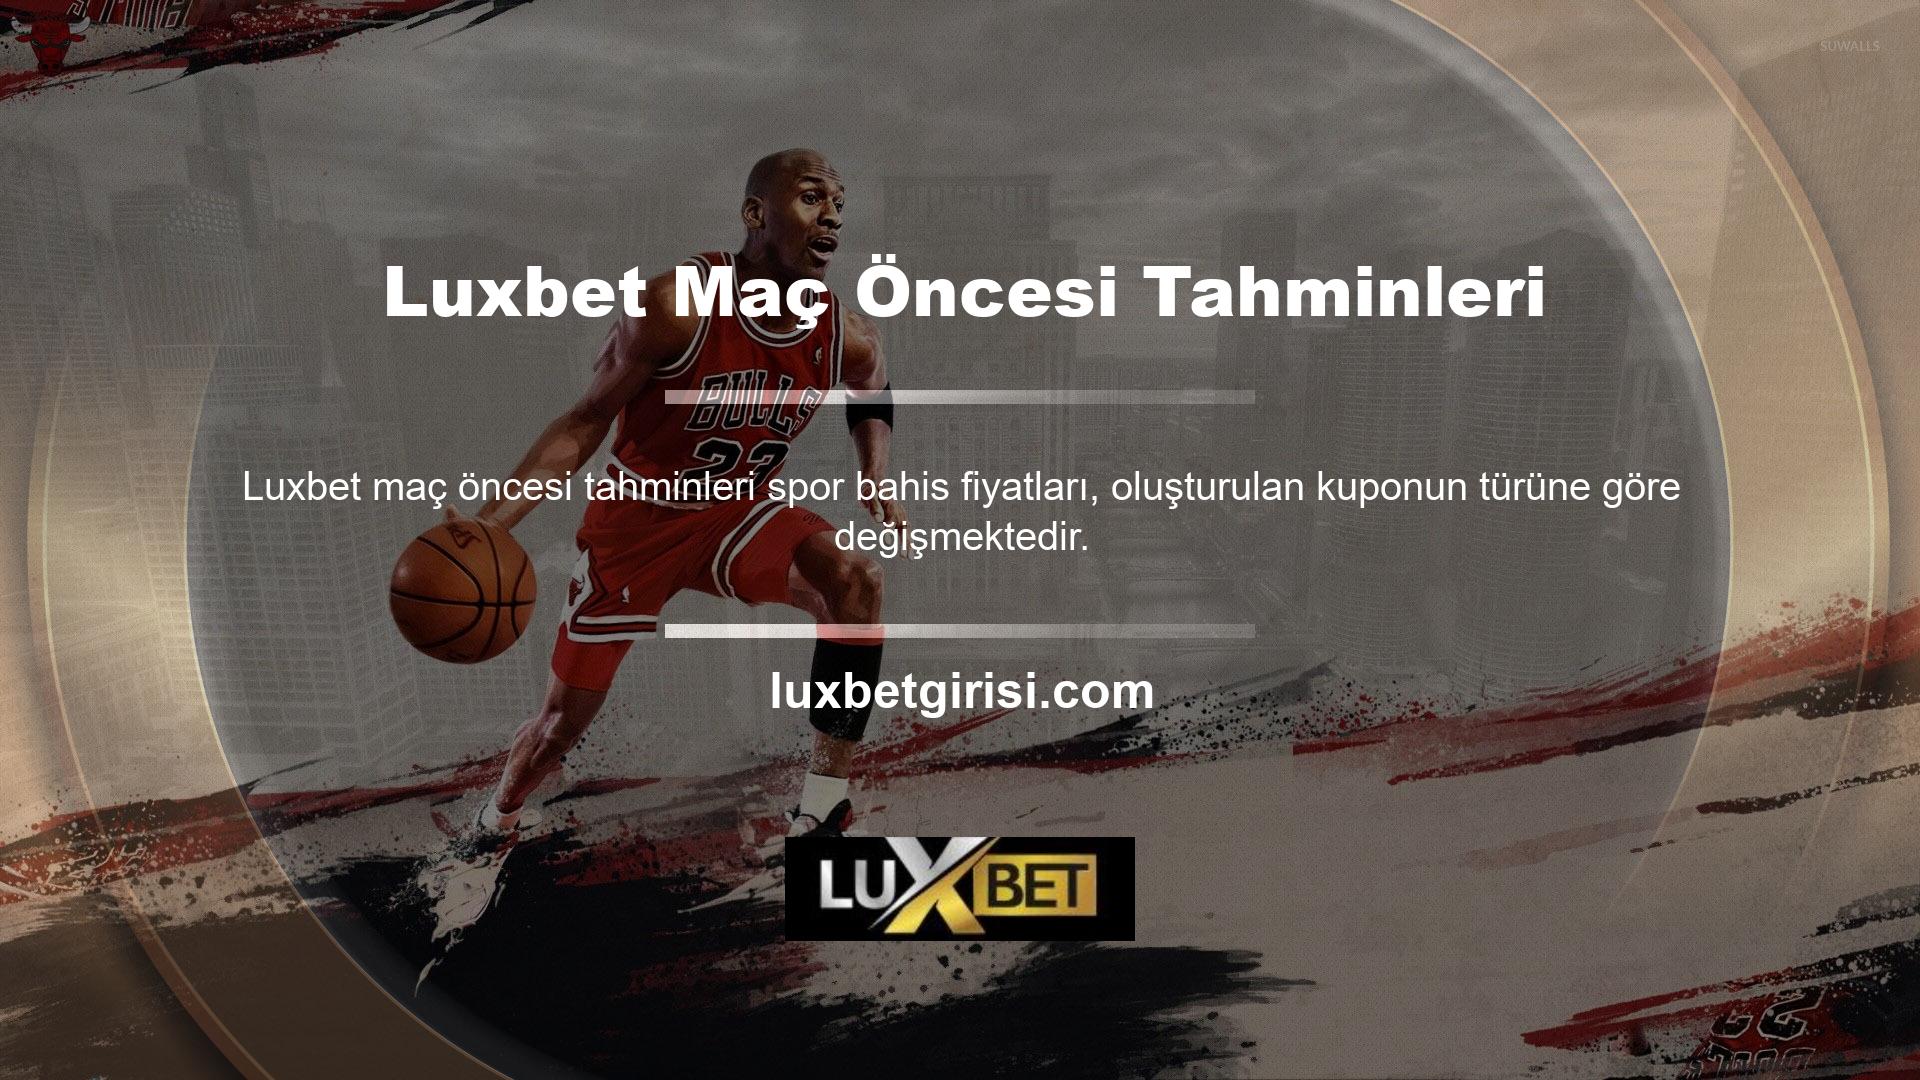 Luxbet web sitesi tüm oyunlar için oyun öncesi seçenekler sunmaktadır